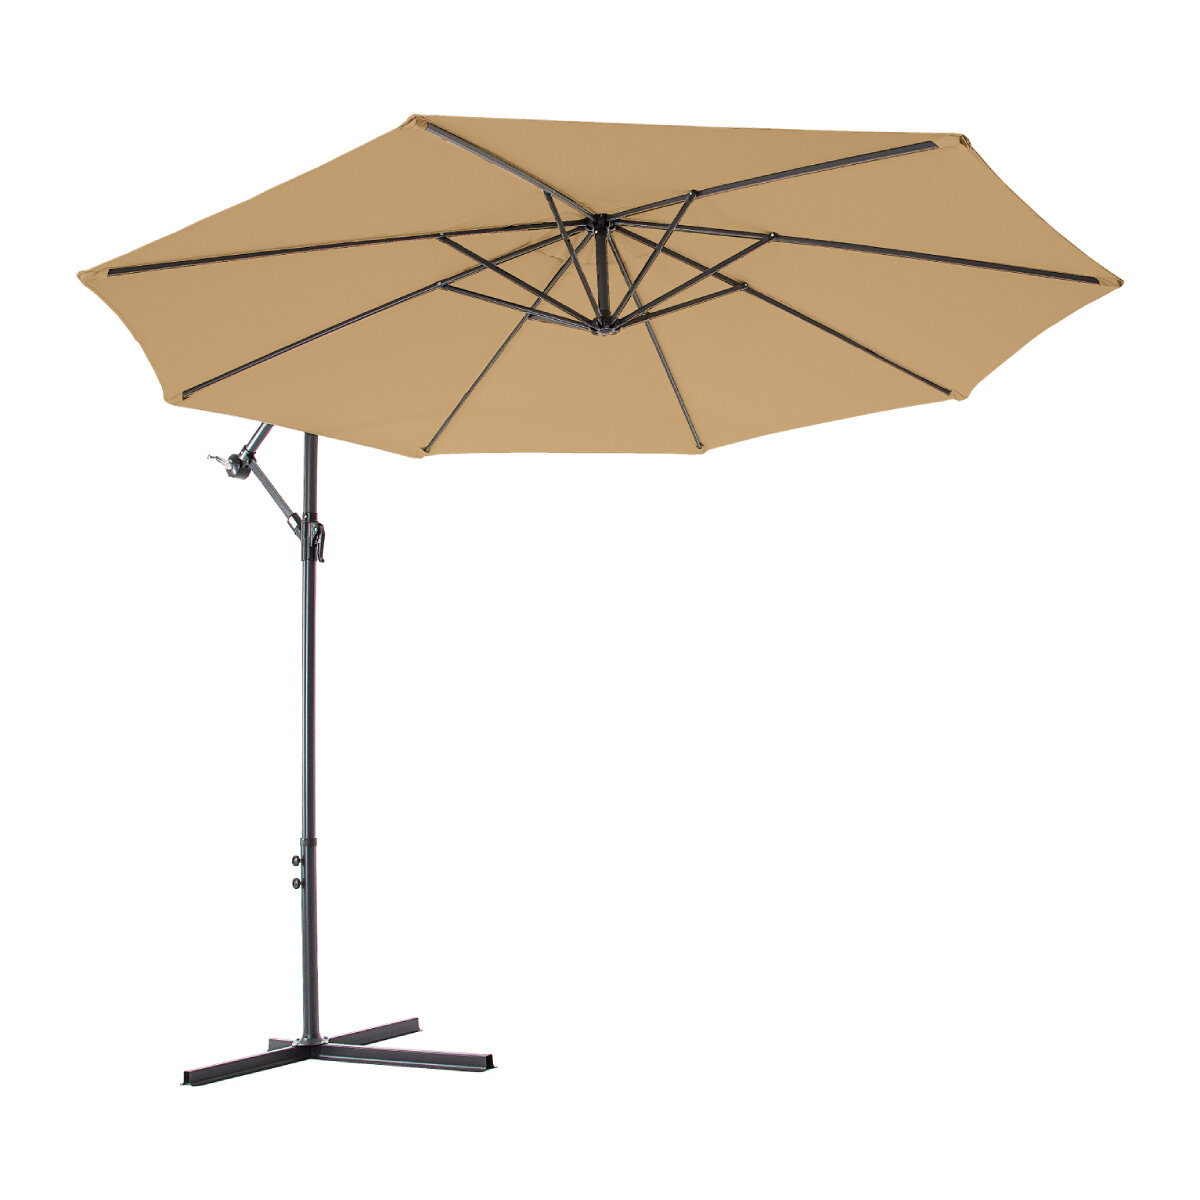 Пляжный зонт Green Glade 8003